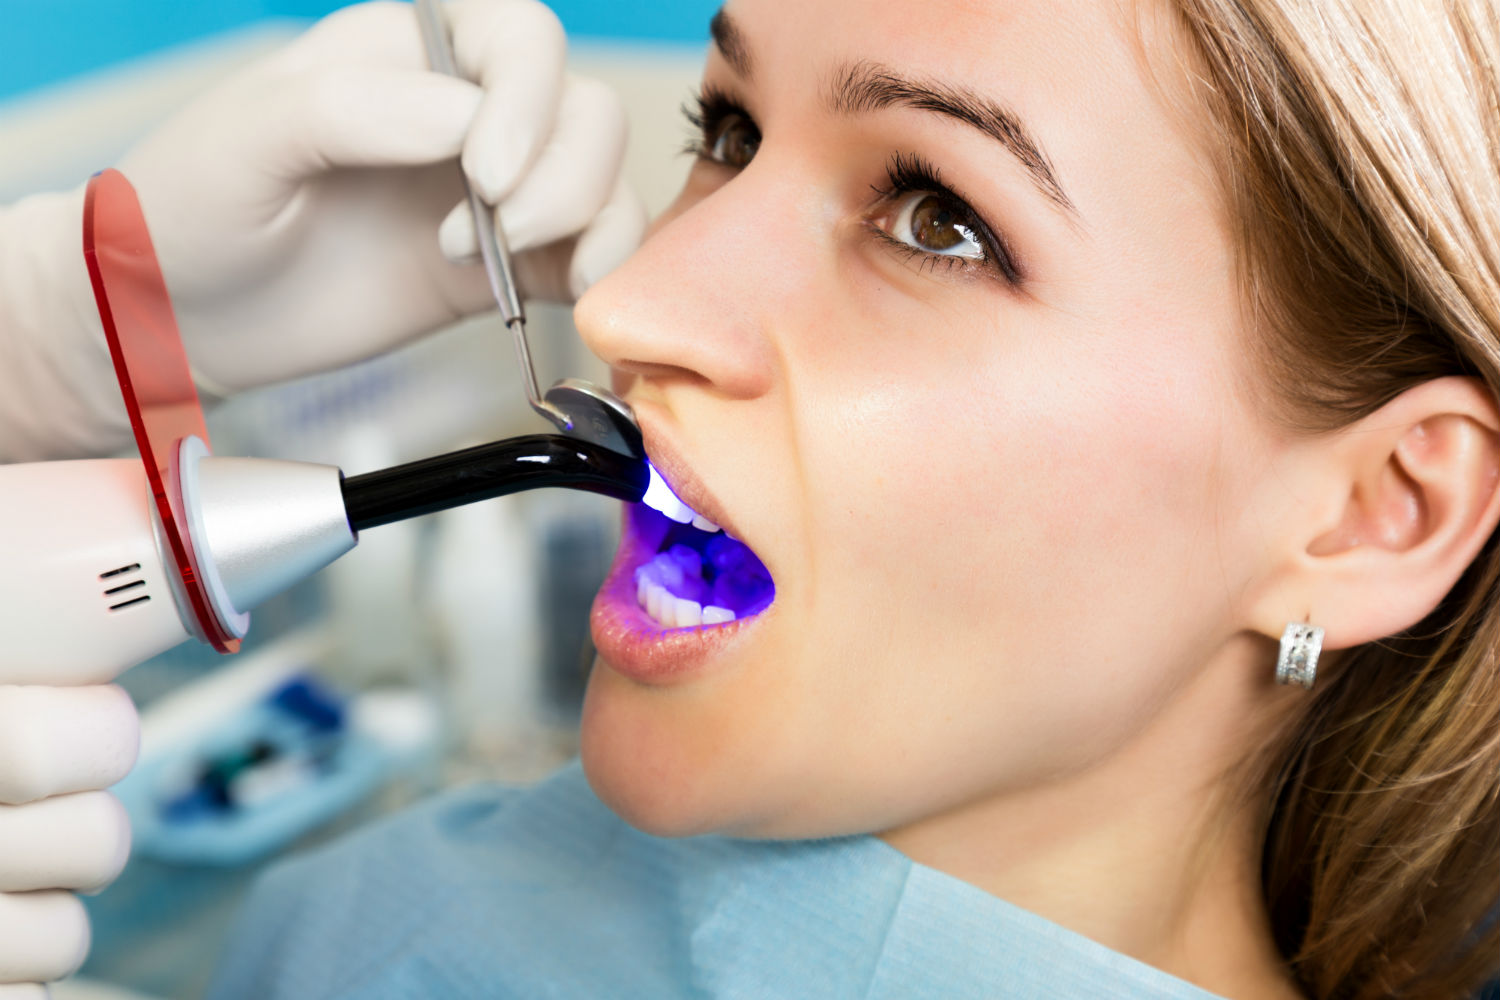 Can You Use Bondic On Teeth?